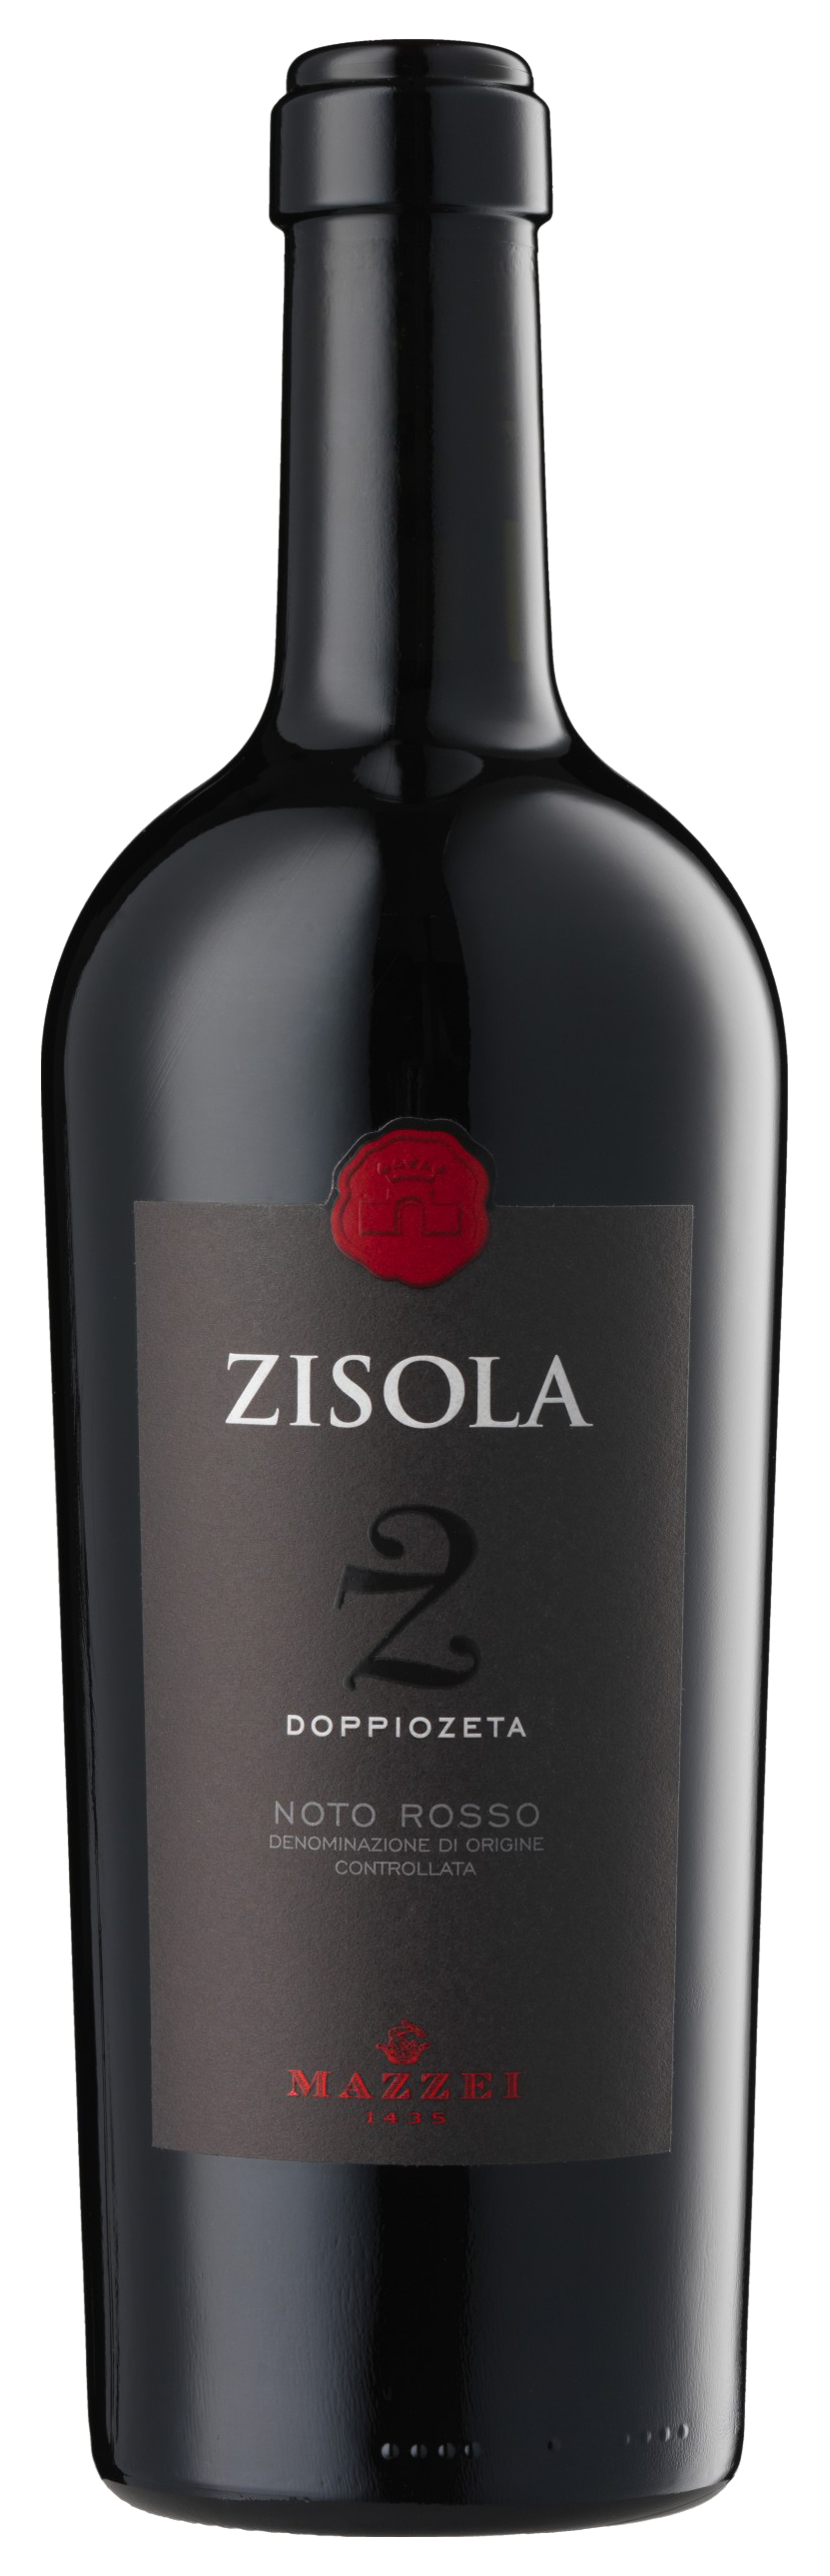 bottle of Zisola doppiozeta Noto Rosso